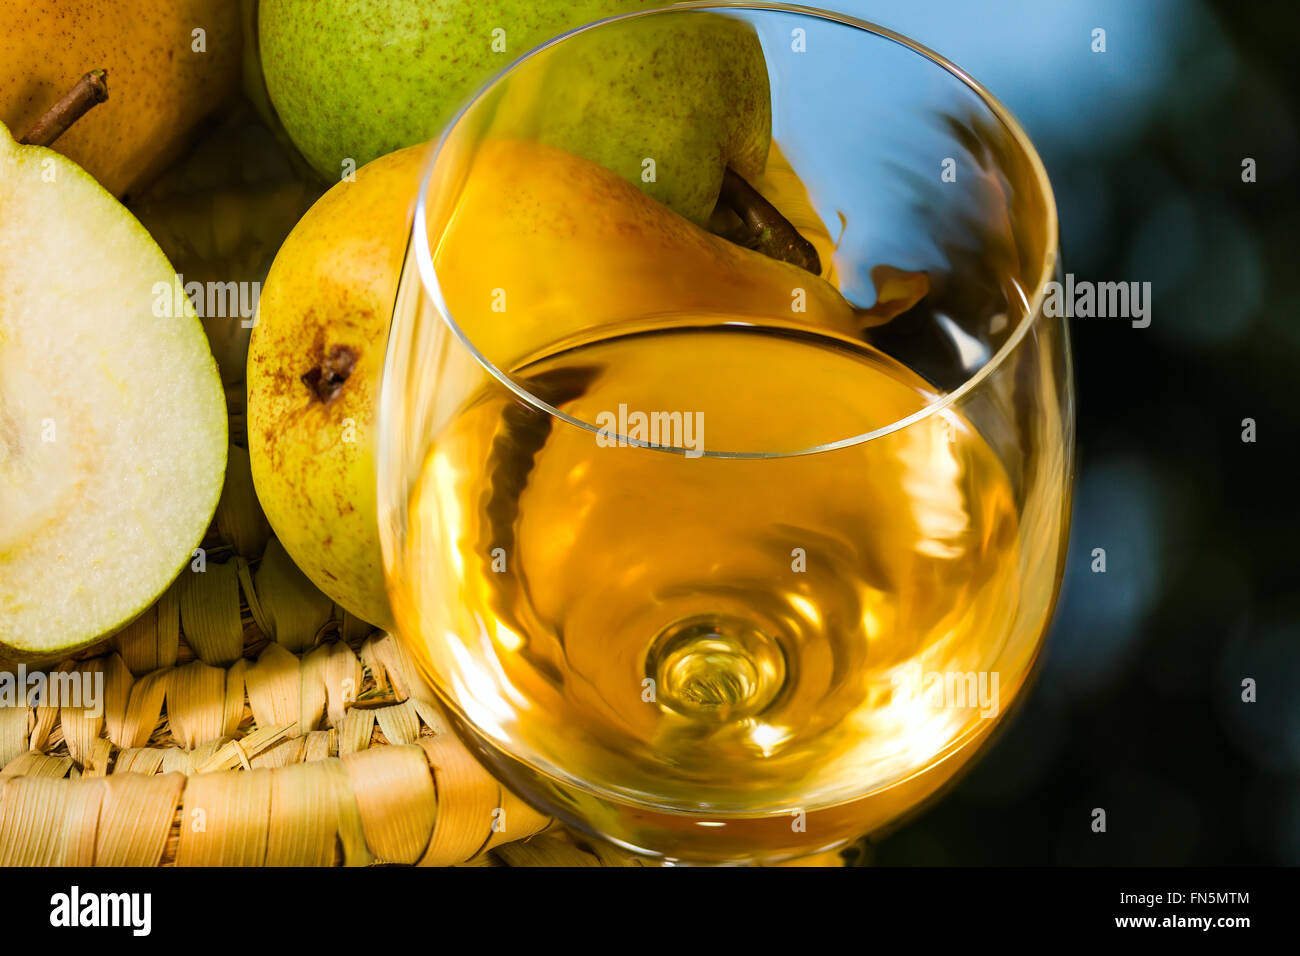 Reife saftige appetitlich Birnen und Glas Wein auf Spiegel-Hintergrund Stockfoto